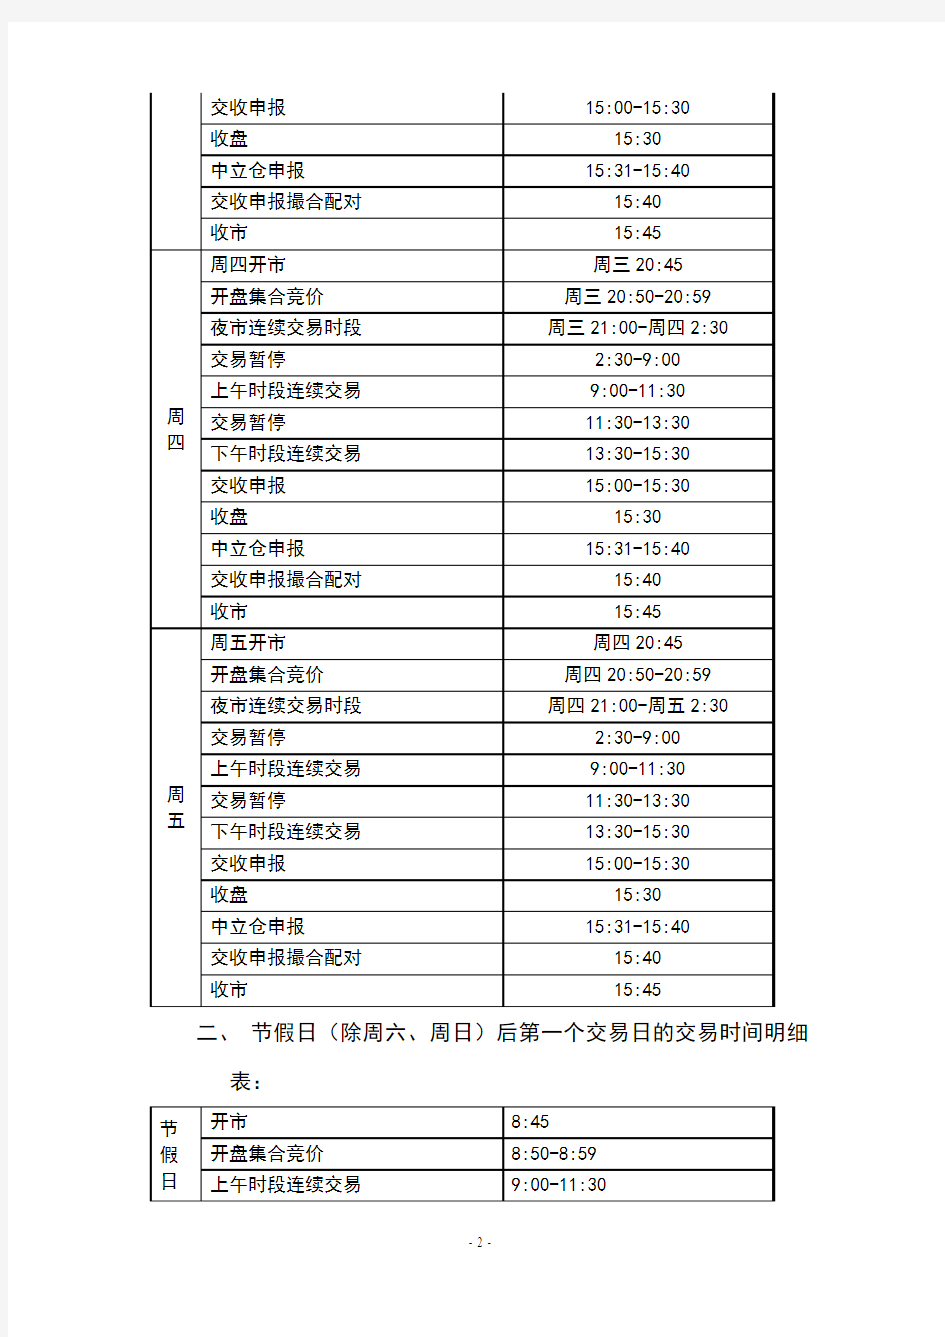 上海黄金交易所交易时间明细表